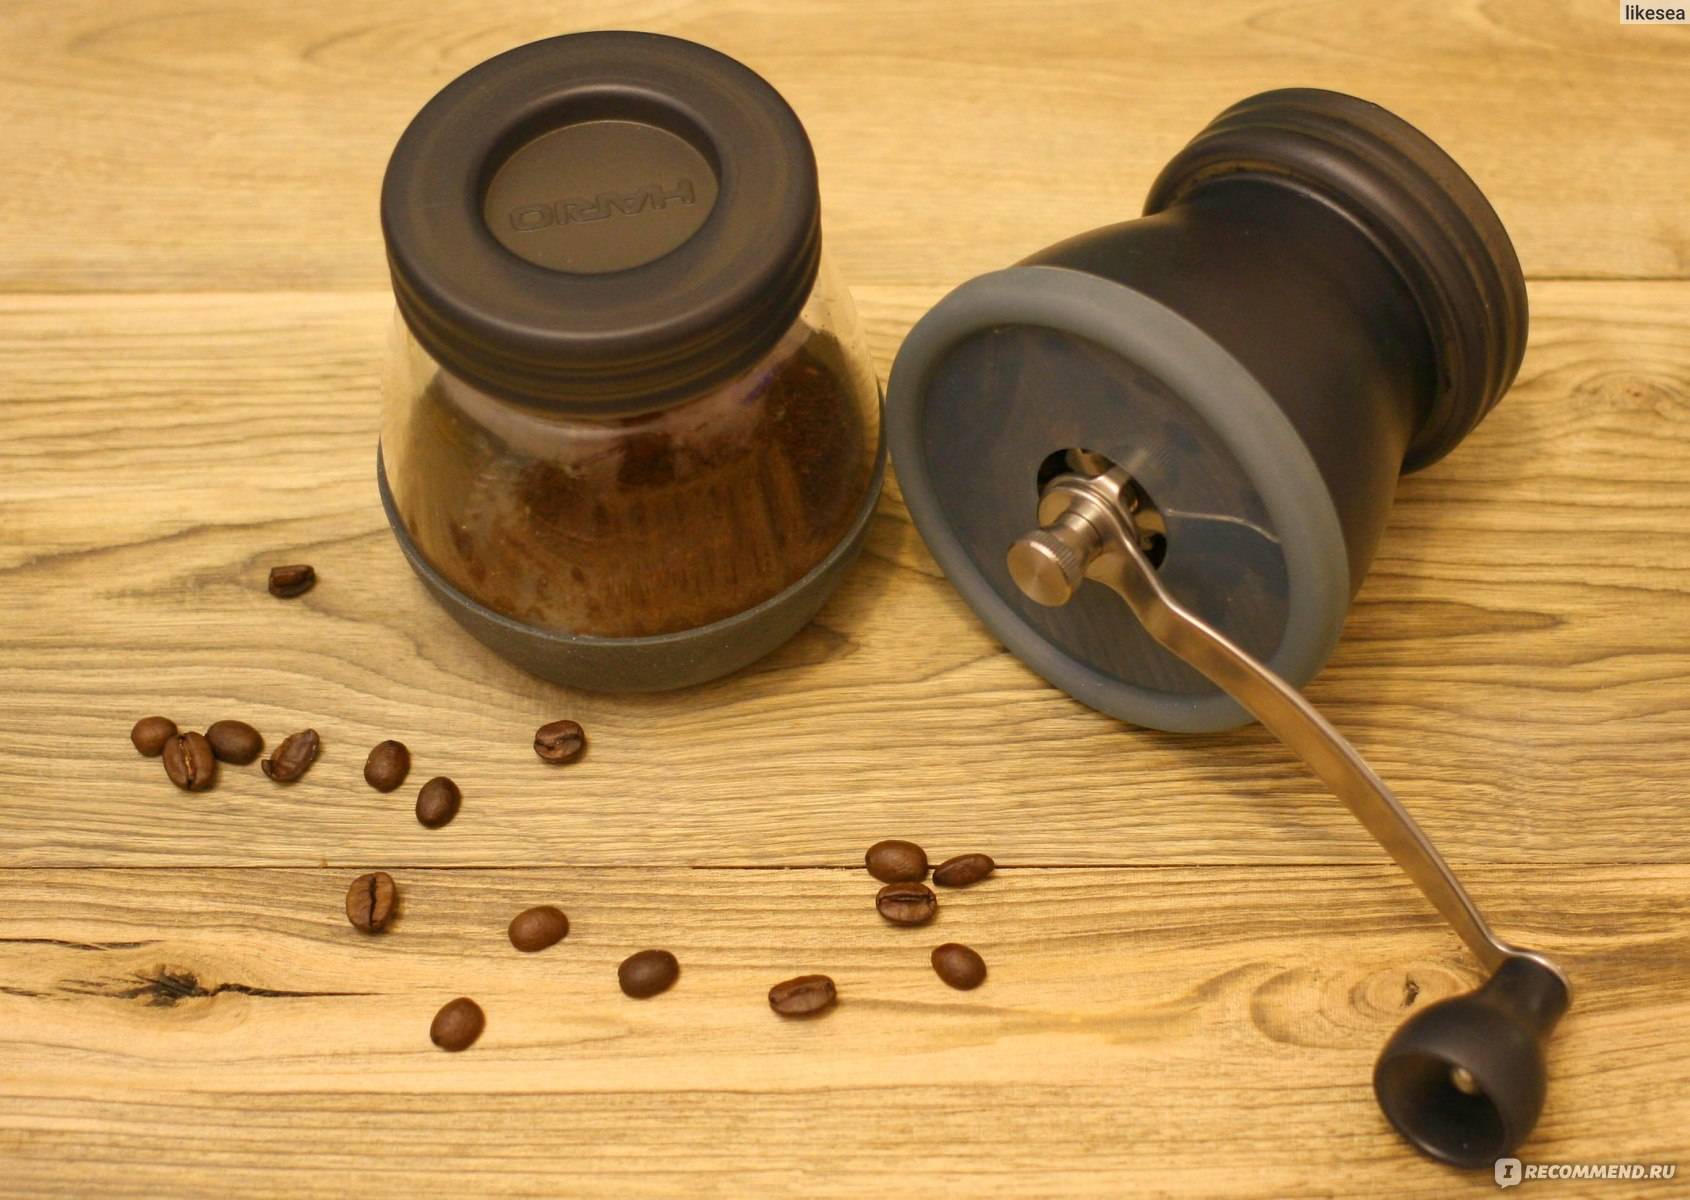 Кофемолка своими руками, пошаговая инструкция и советы по изготовлению